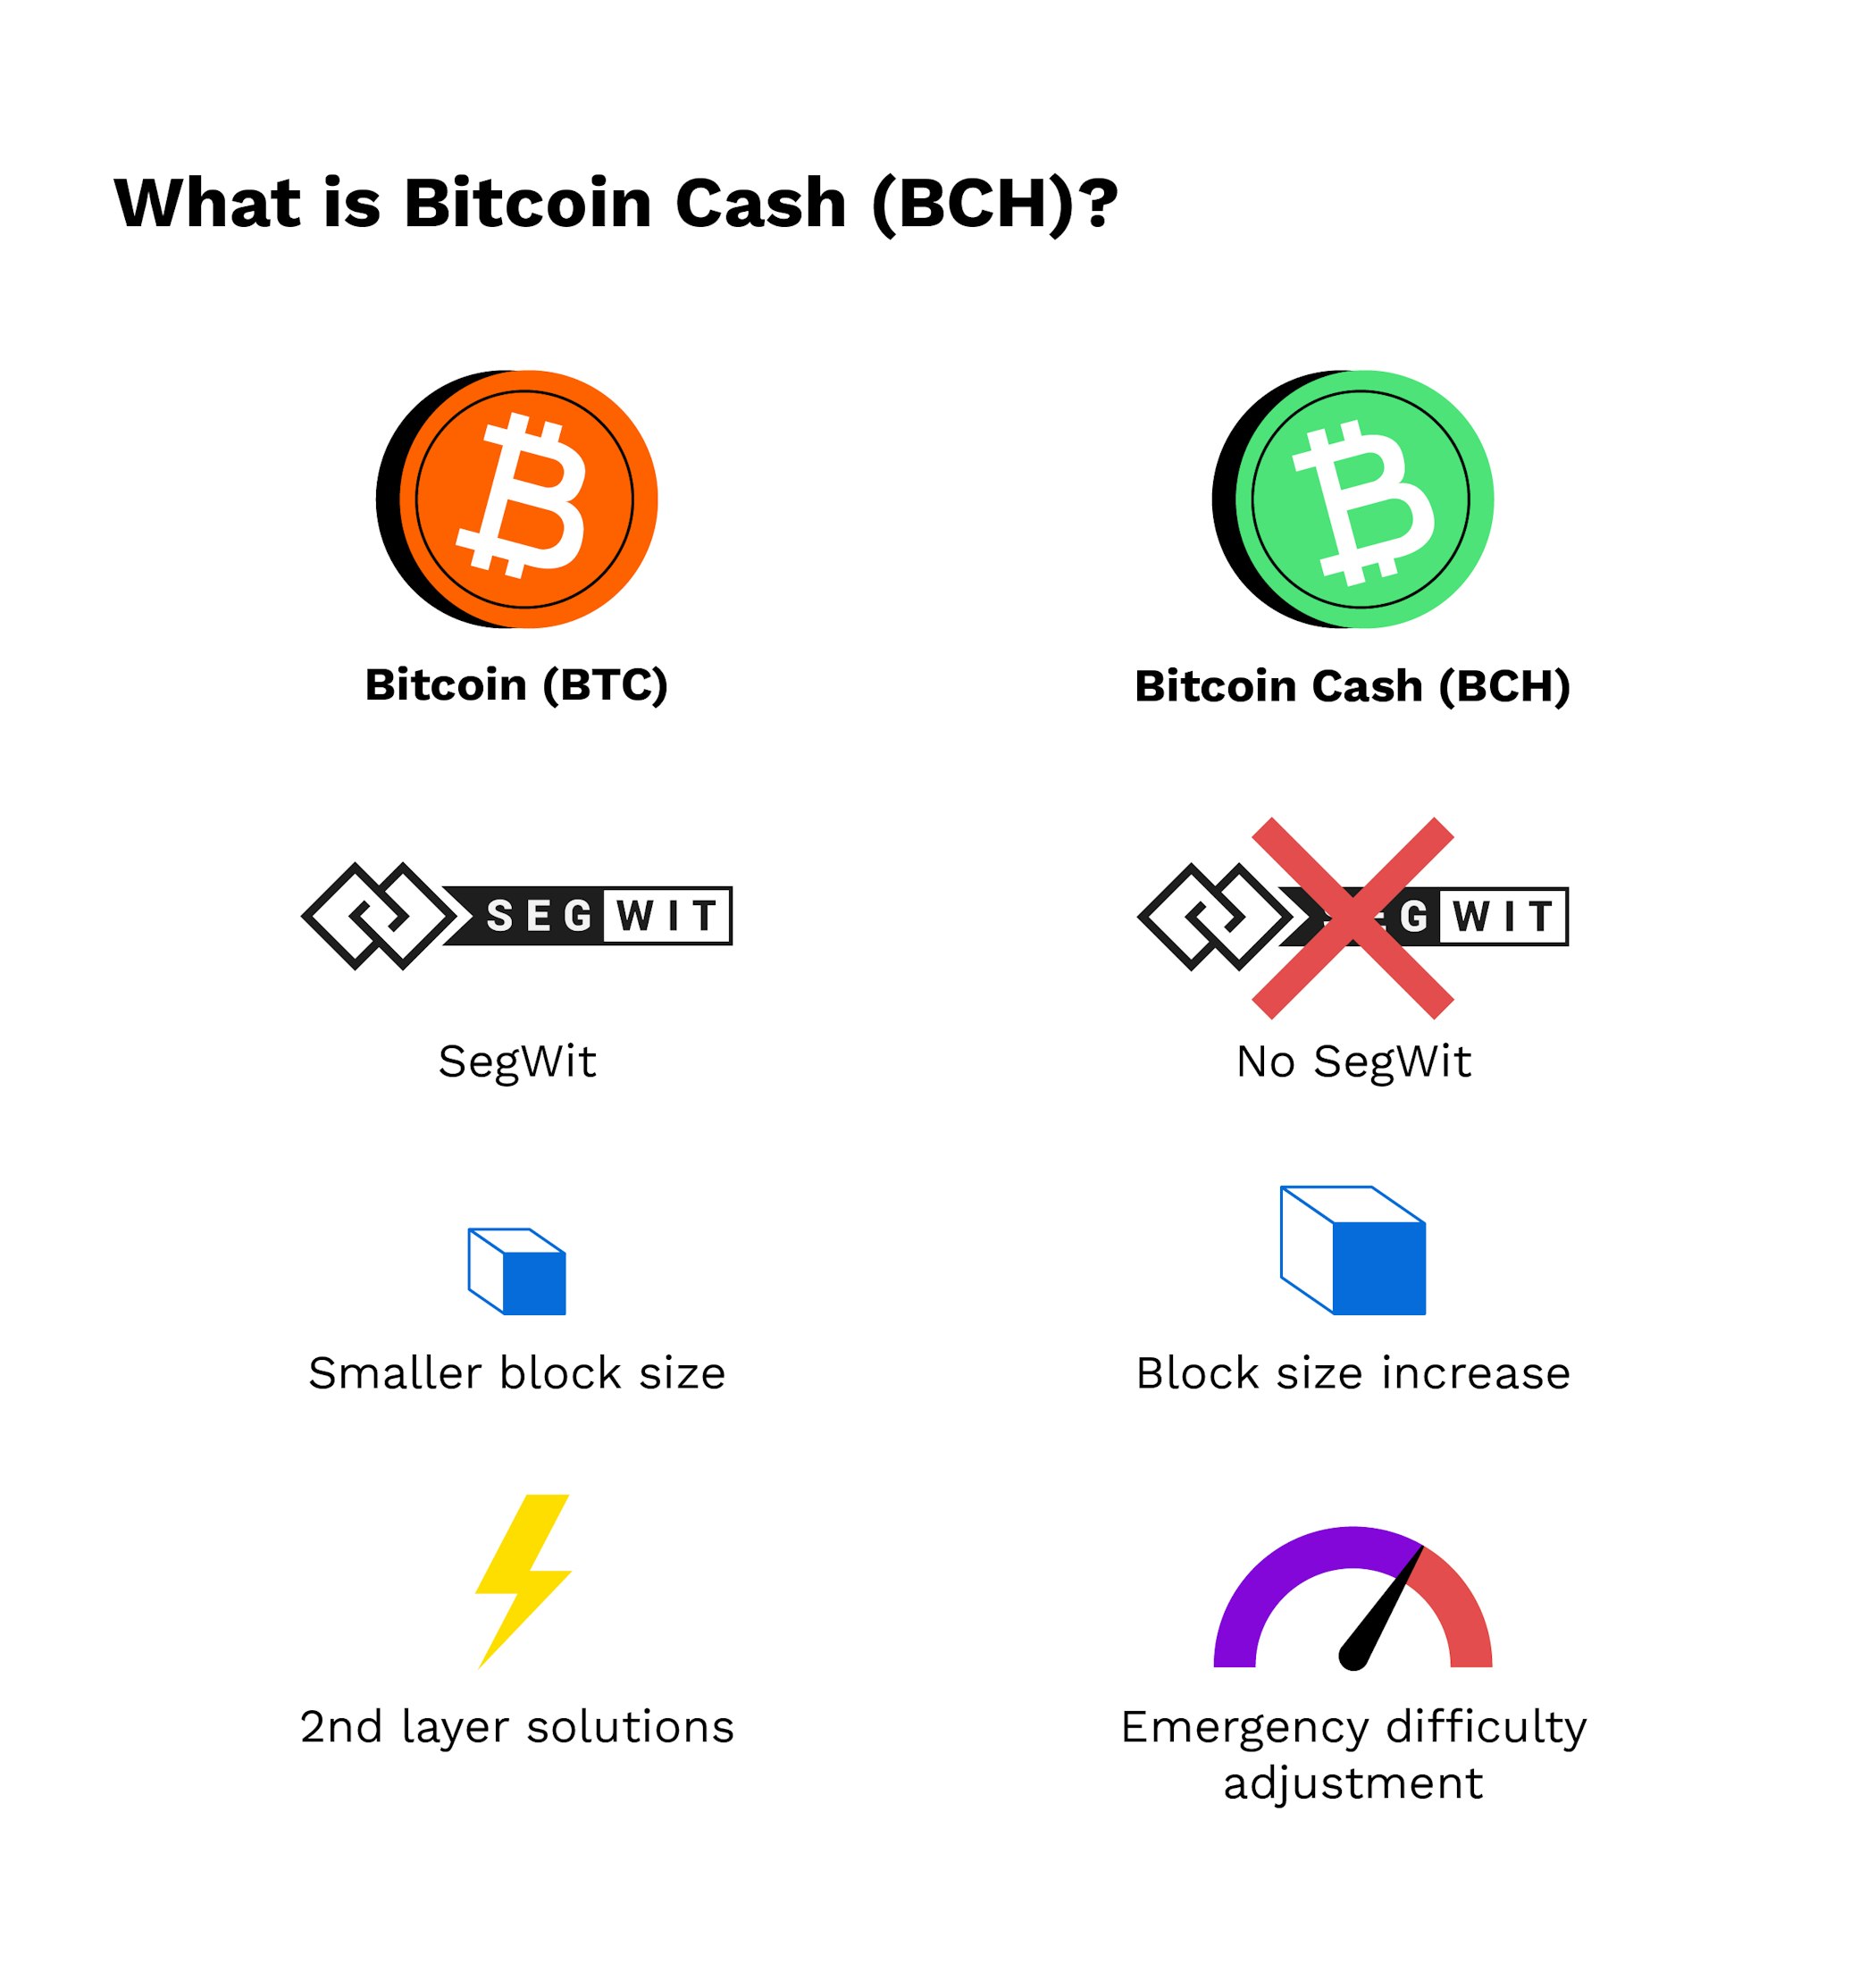 Bitcoin cash block amazon to accept bitcoins